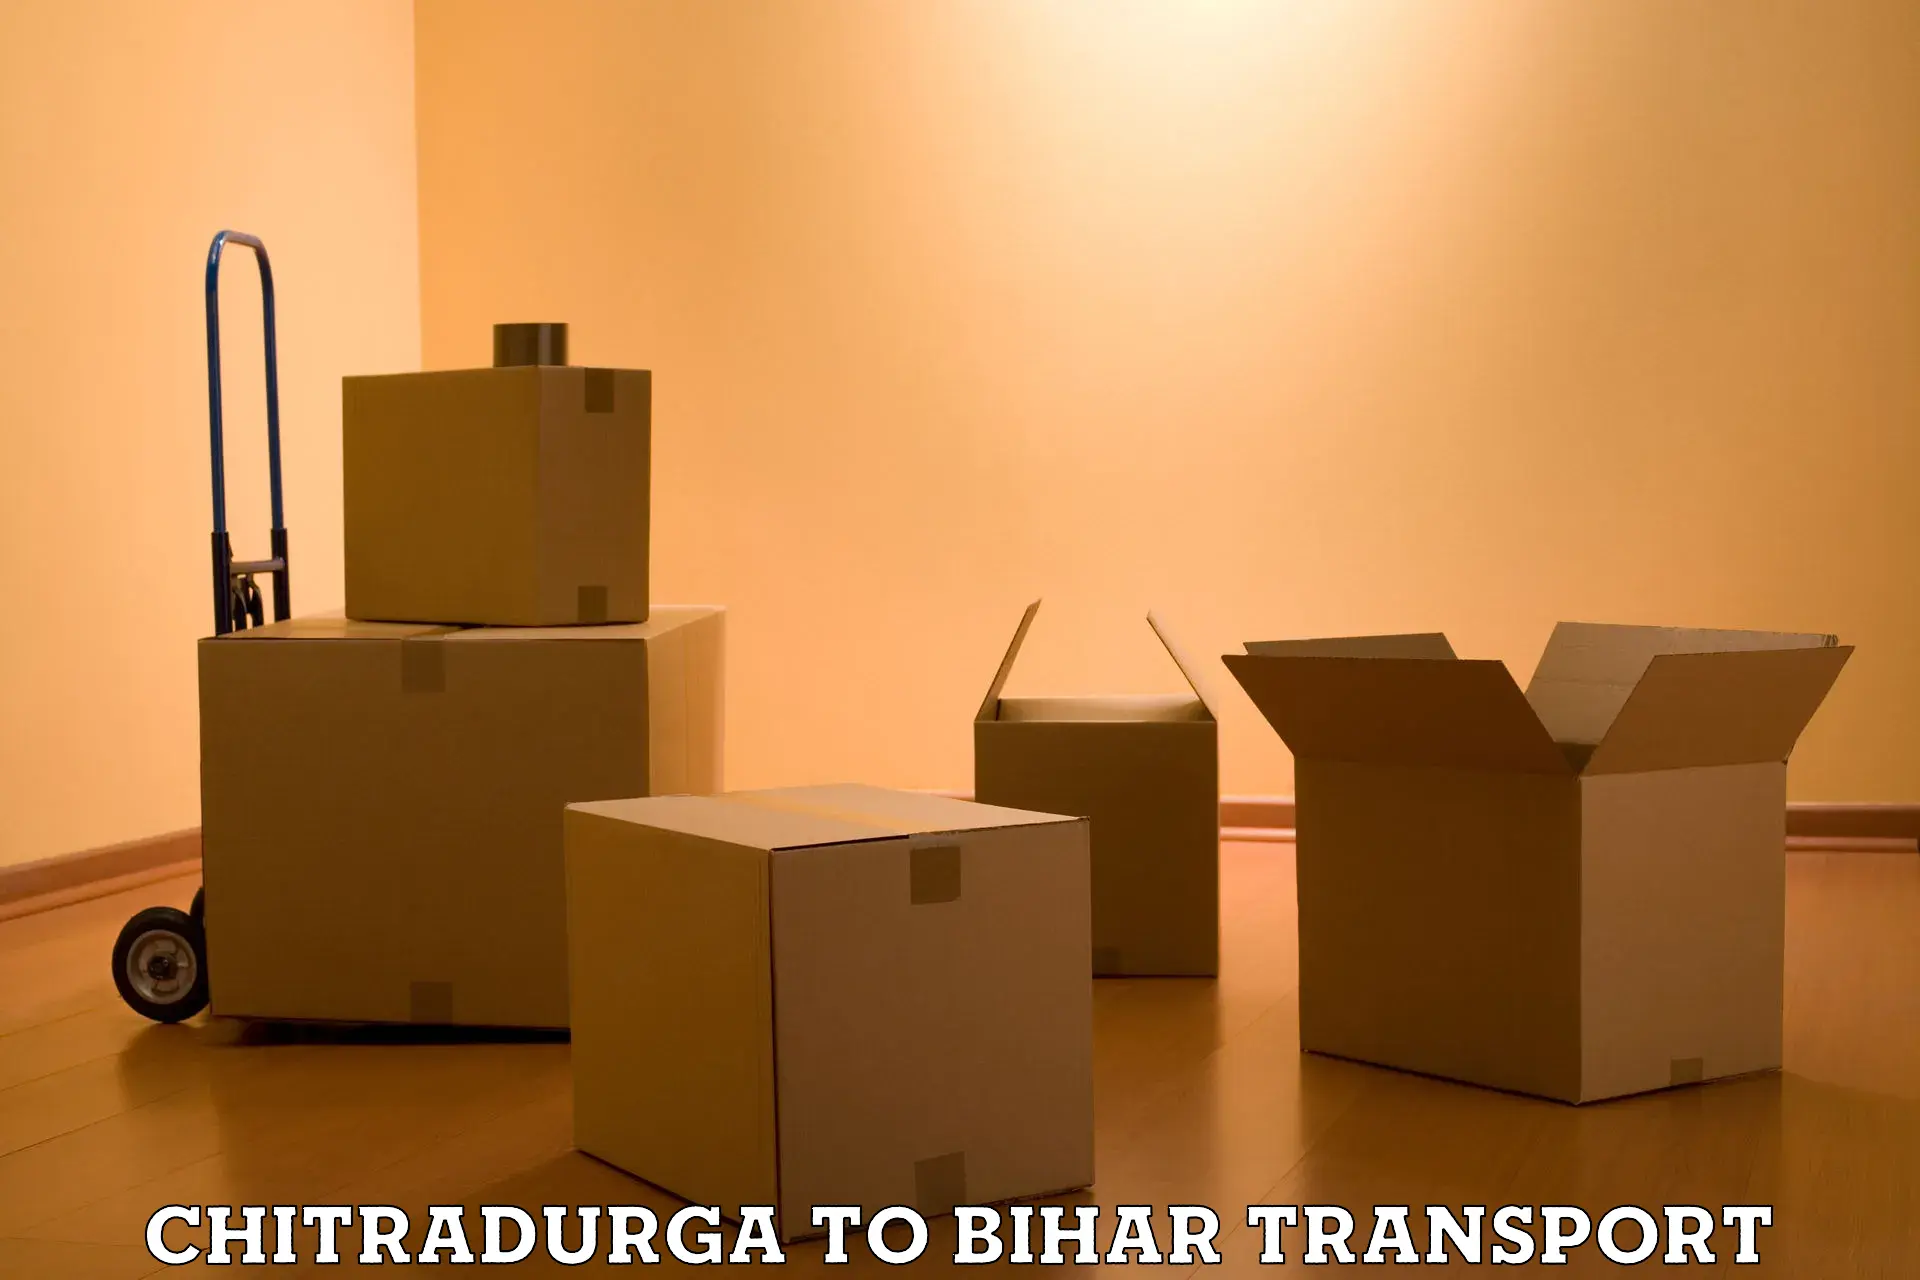 International cargo transportation services Chitradurga to Bakhtiarpur